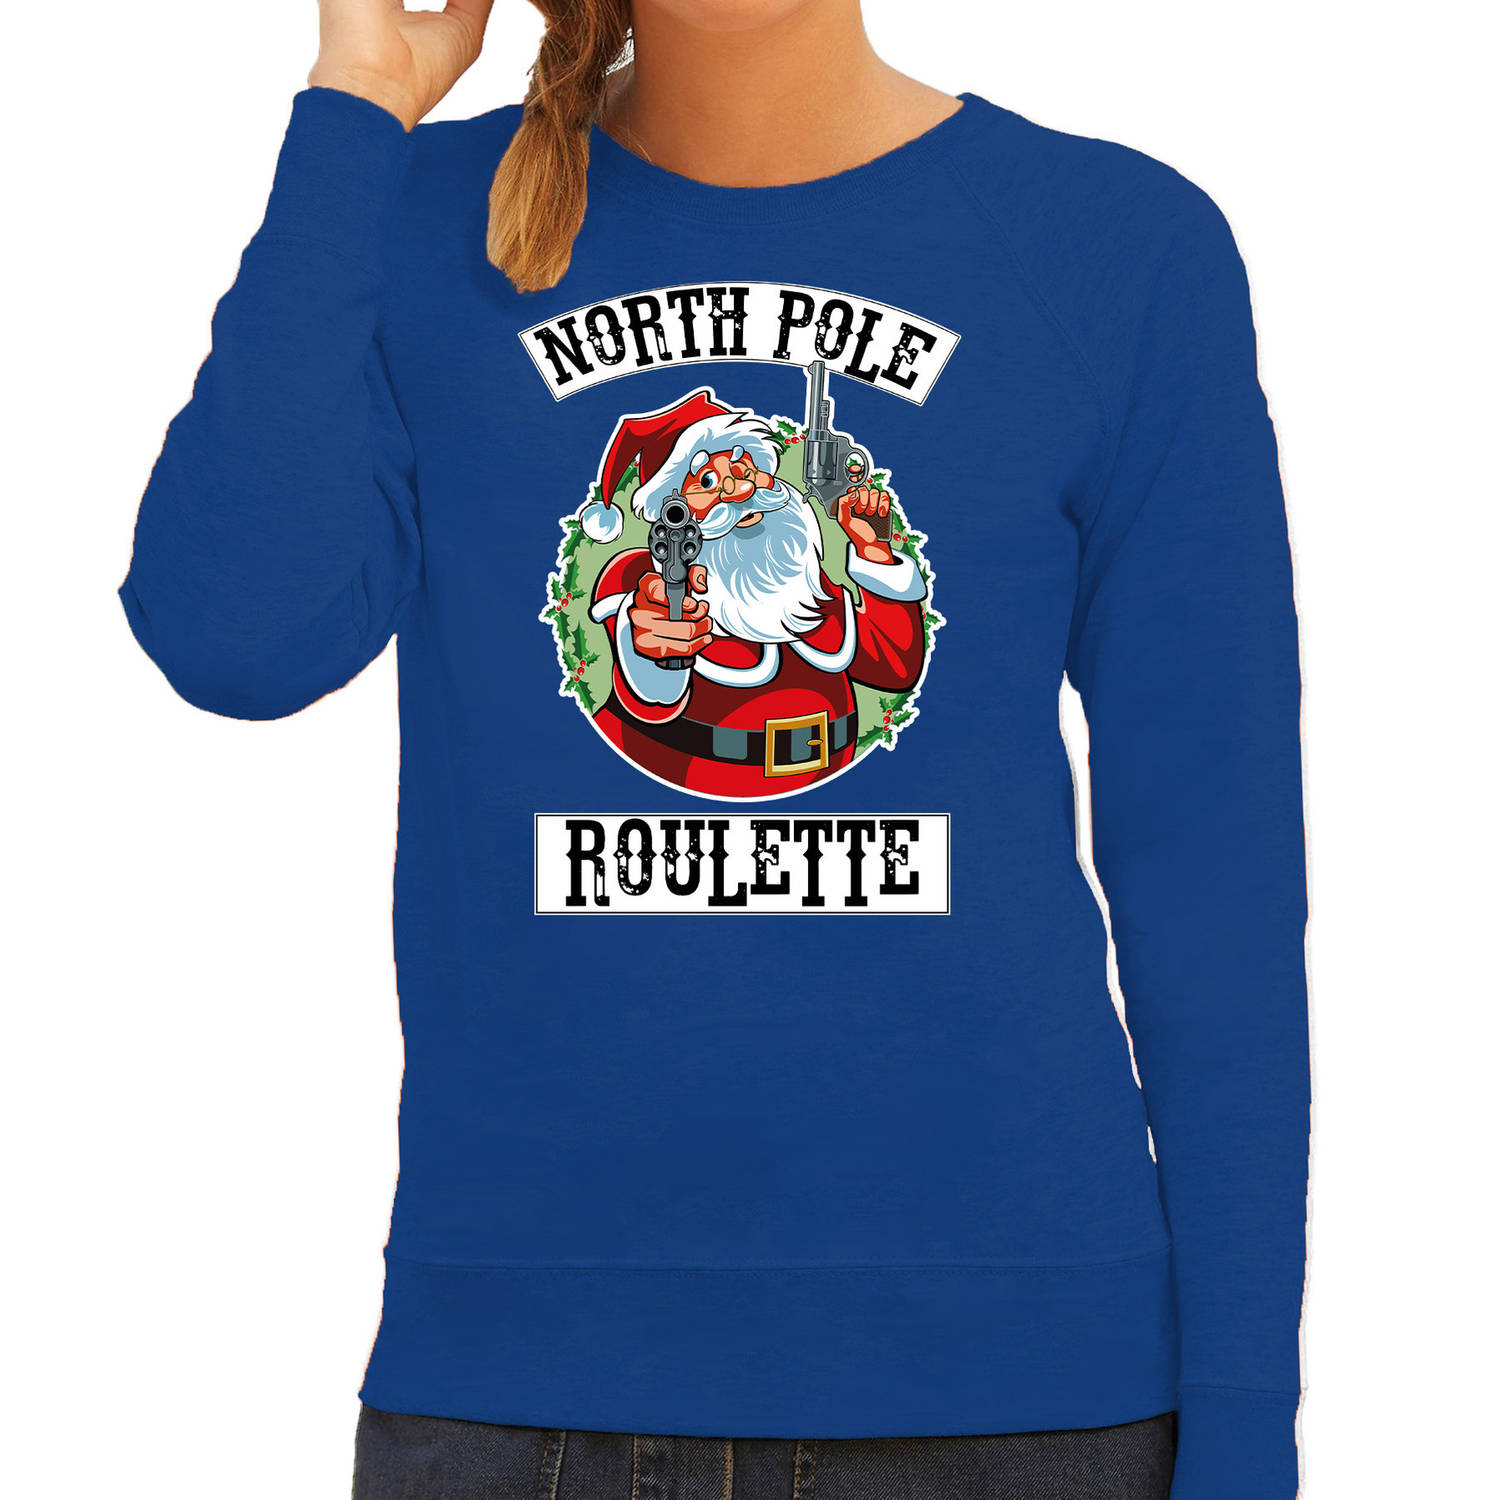 Blauwe Kersttrui / Kerstkleding Northpole roulette voor dames L - kerst truien